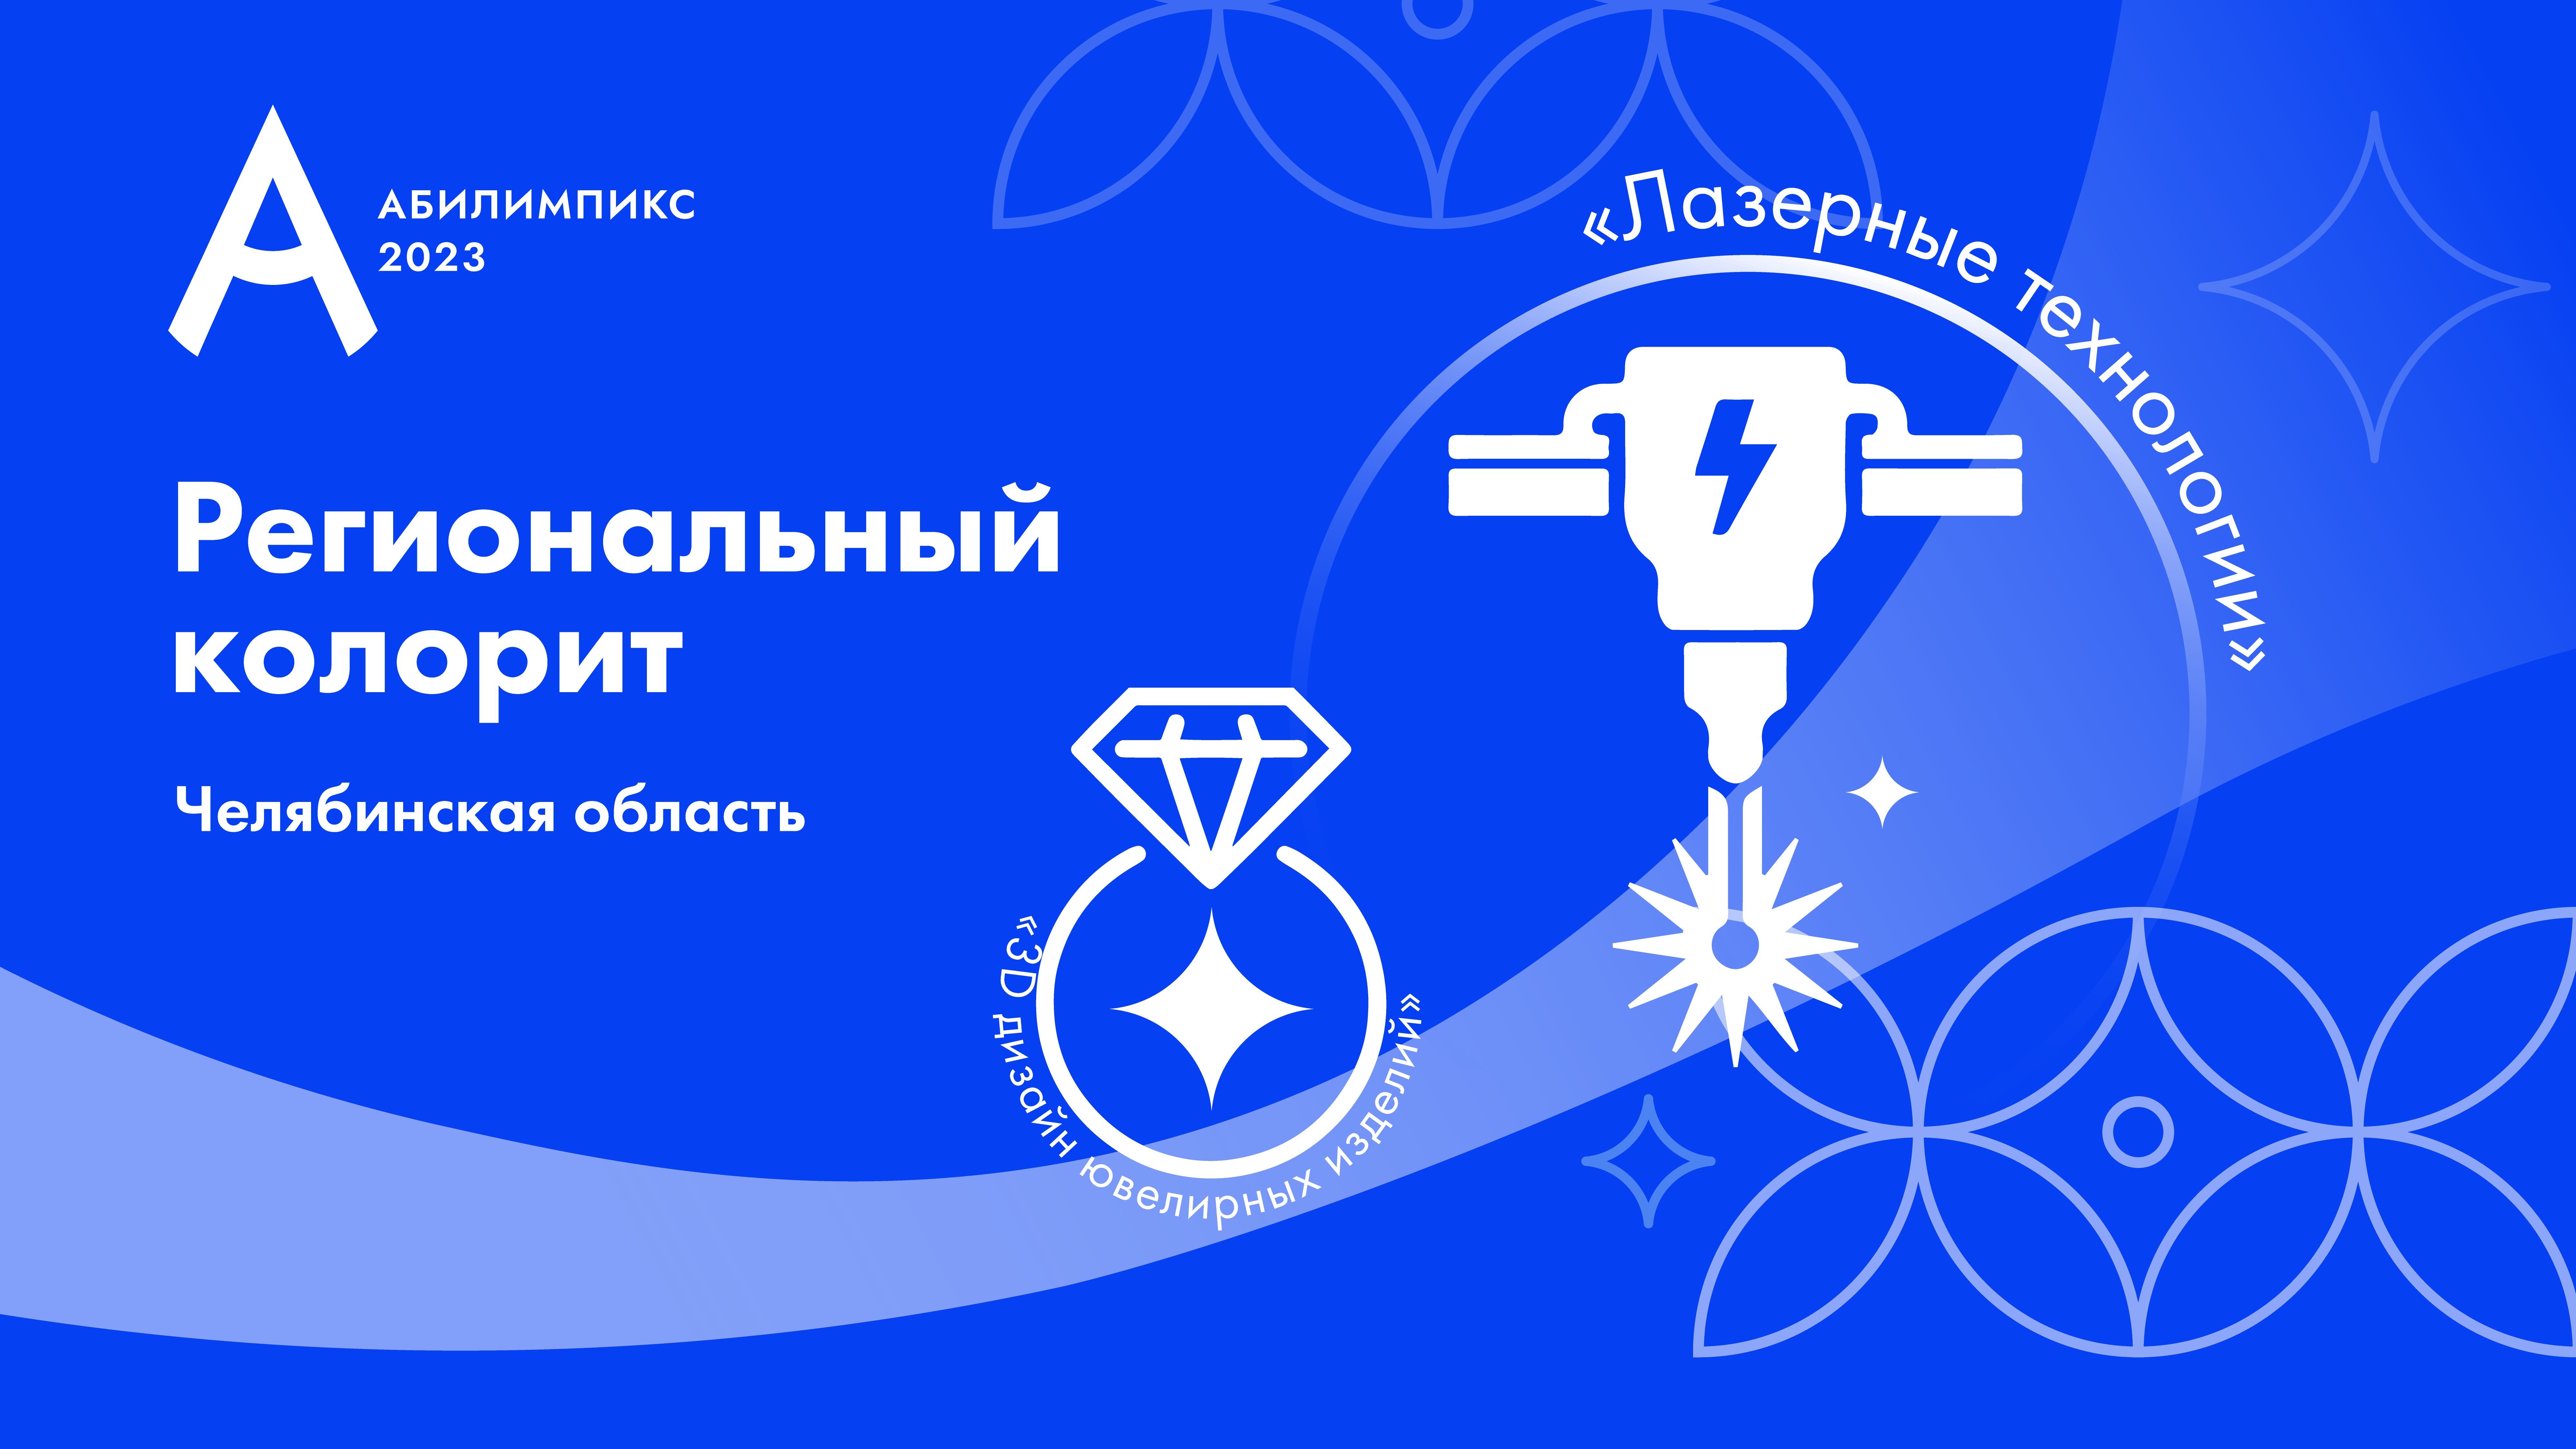 «Лазерные технологии» и «Юриспруденция» – региональные компетенции Челябинской области